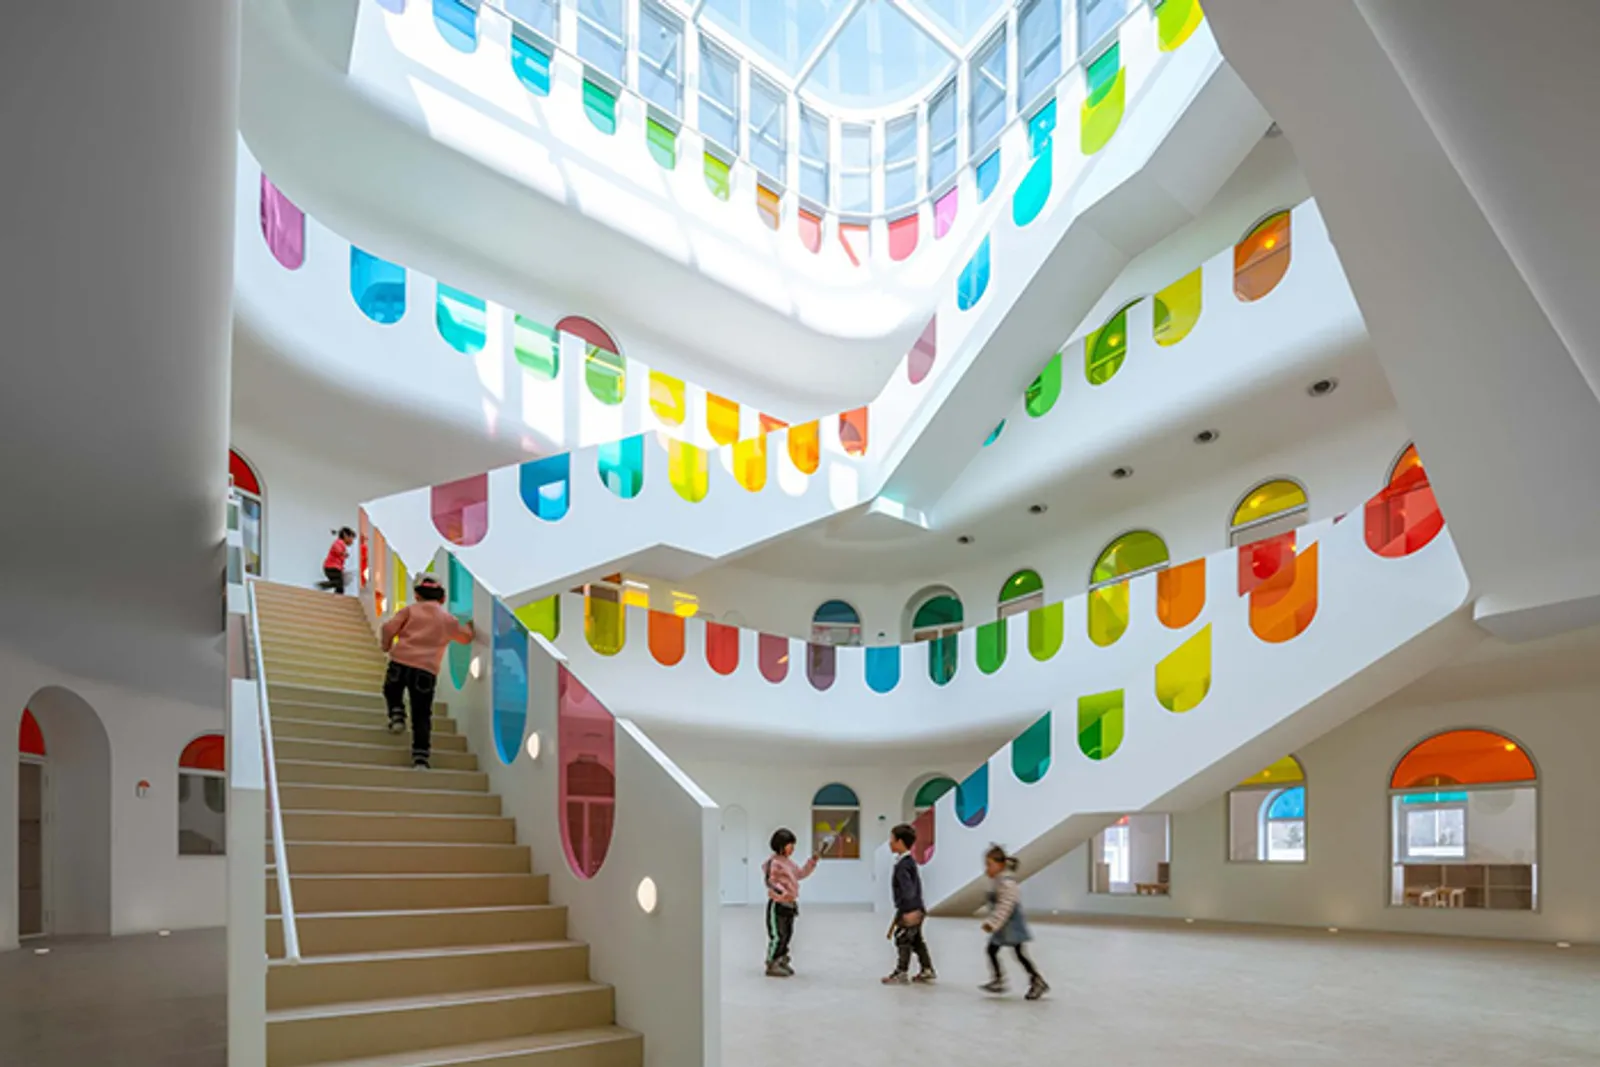 Gemas dan Penuh Warna, Gedung TK di Tiongkok Ini Bisa Jadi Inspirasi